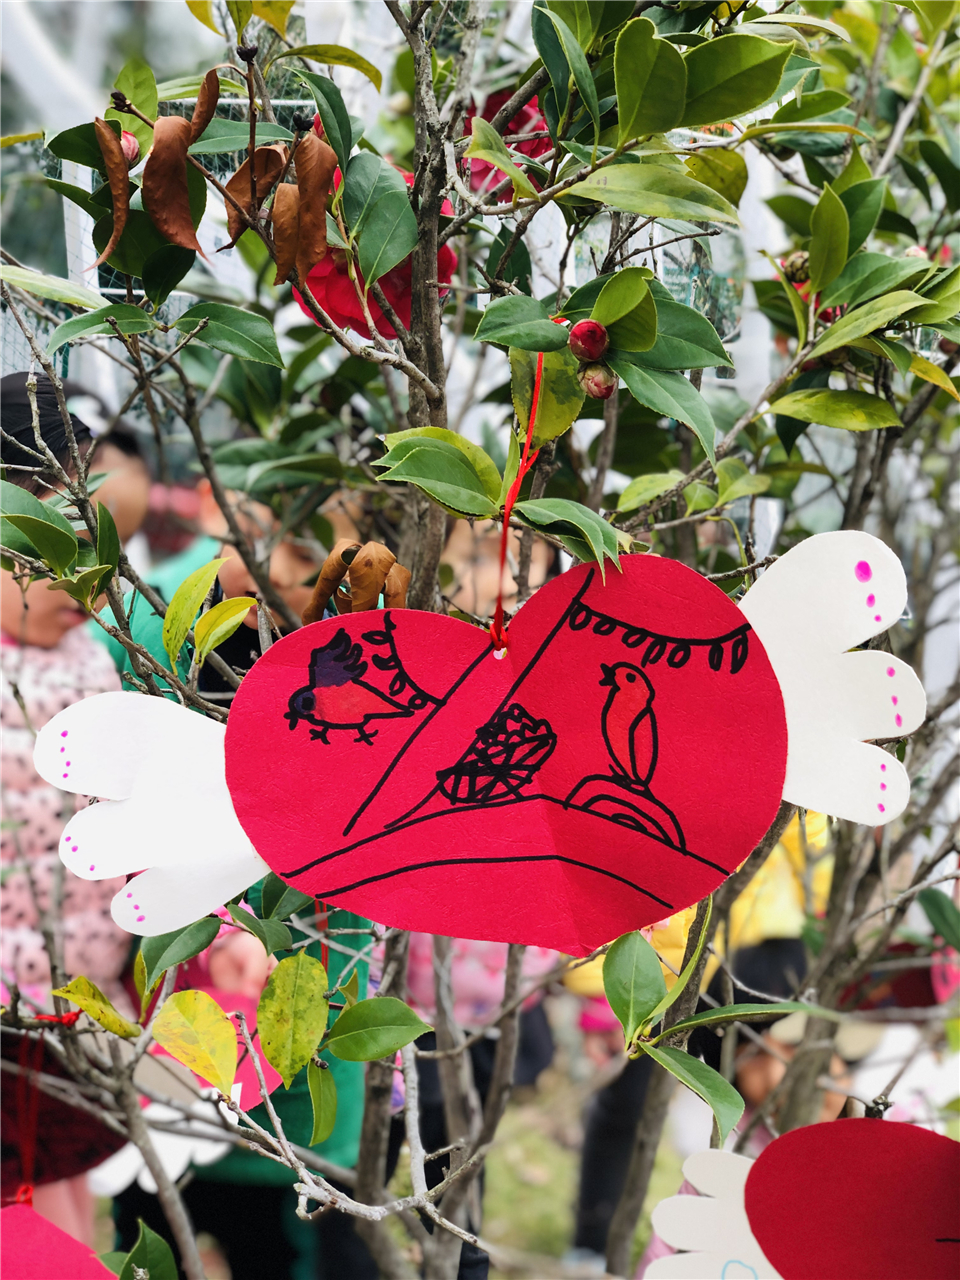 小树上挂满了萌娃们的心愿卡,寓意着萌娃们新年美好的愿望.